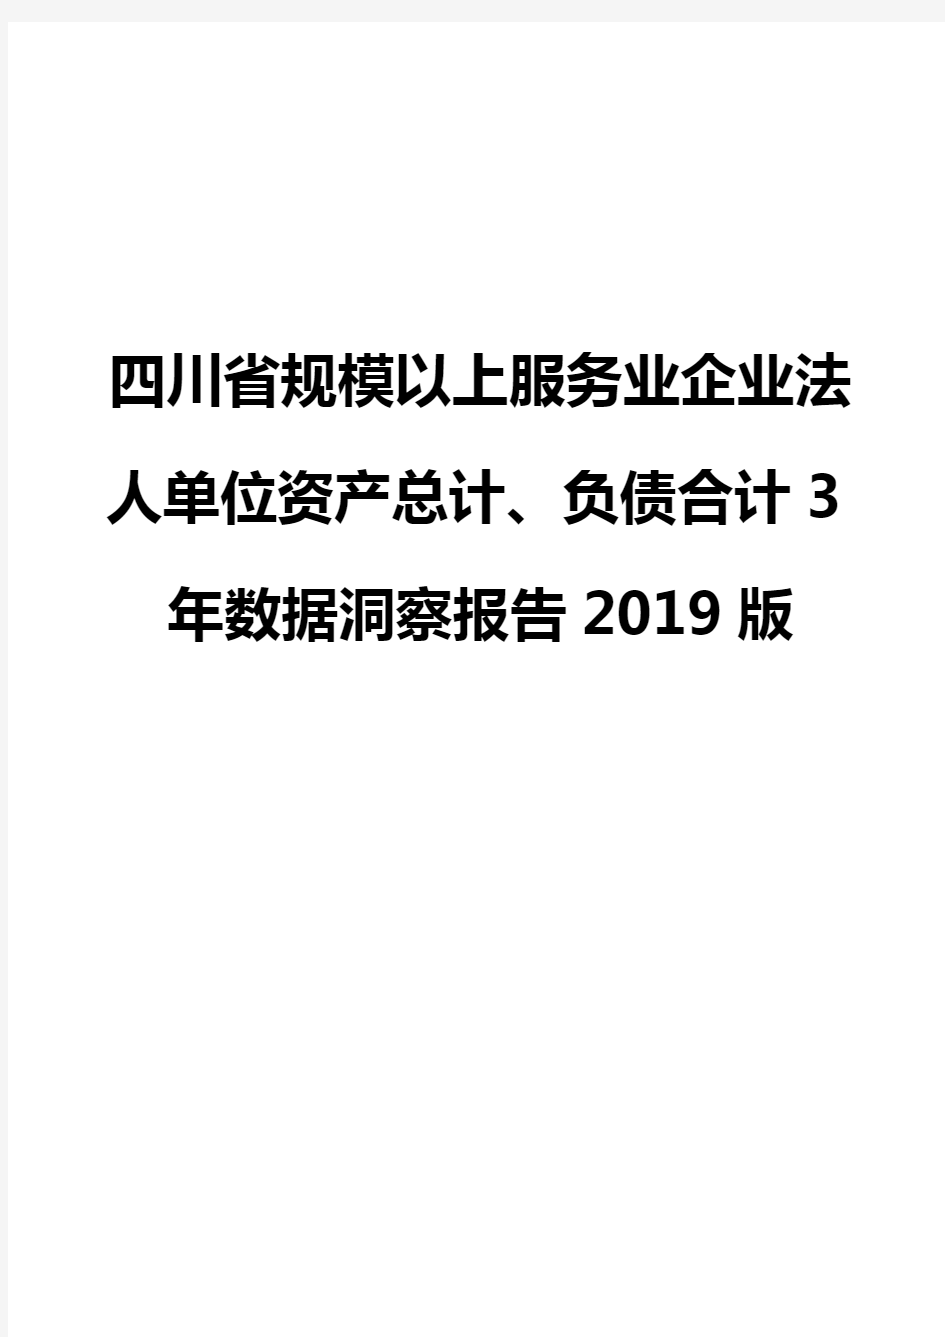 四川省规模以上服务业企业法人单位资产总计、负债合计3年数据洞察报告2019版